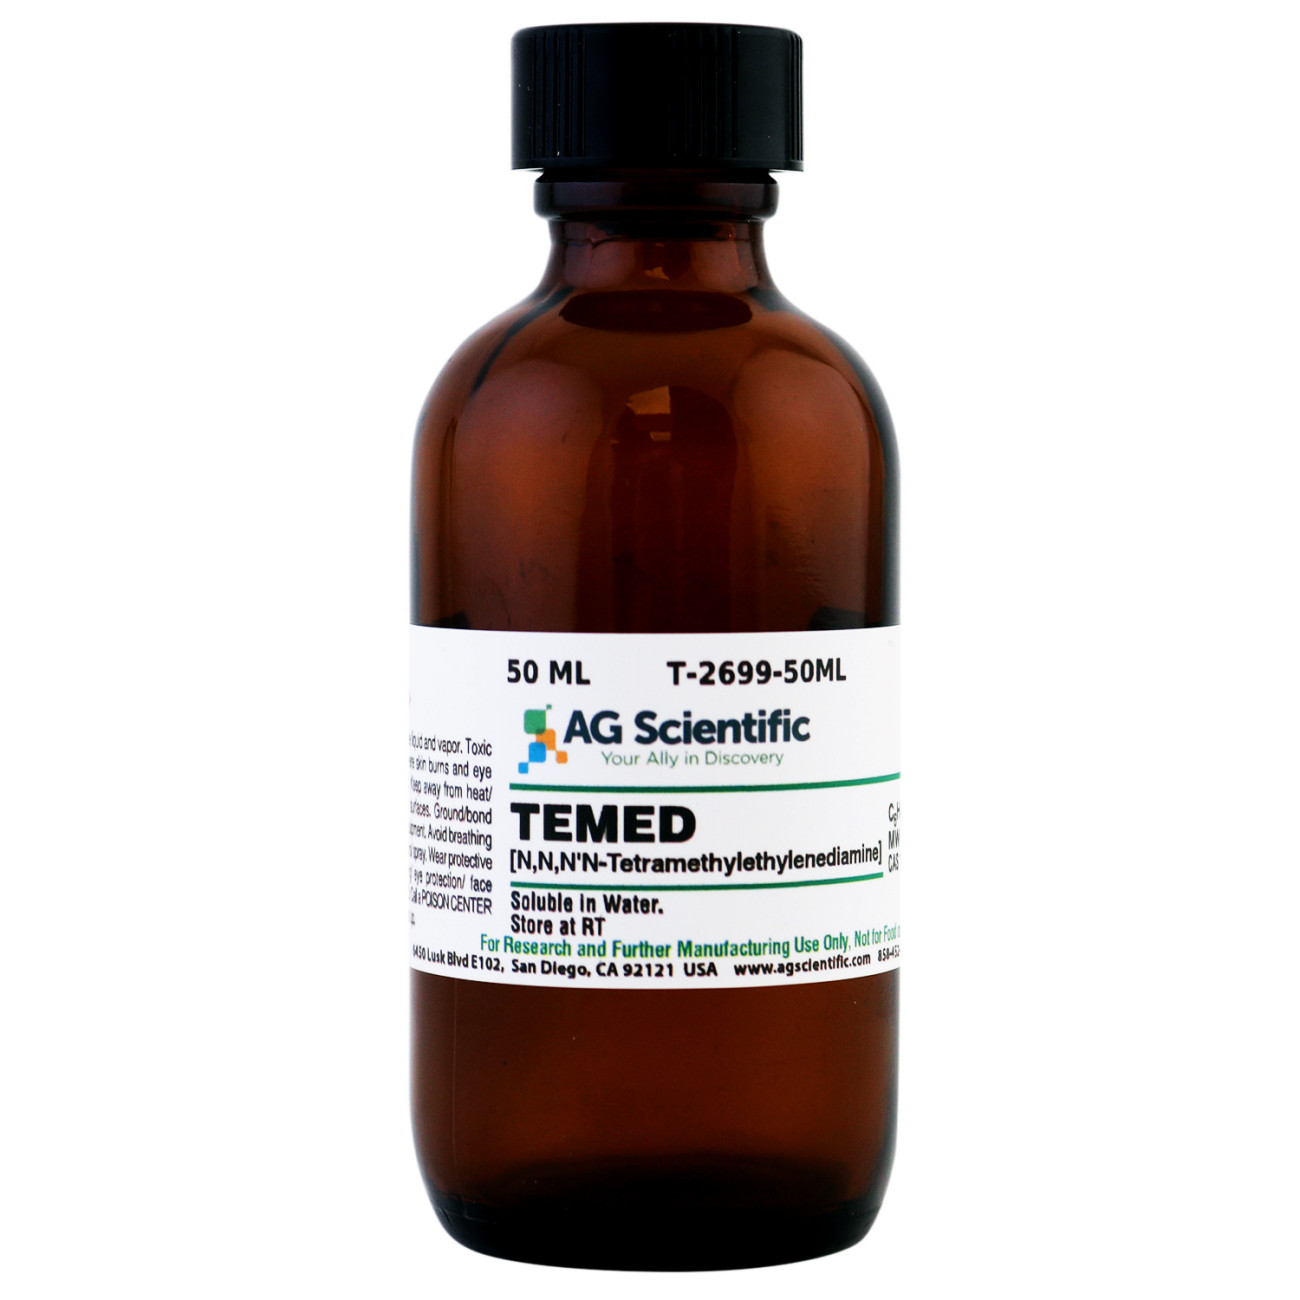 TEMED [N,N,N',N'-Tetramethylethylenediamine], 50 mL